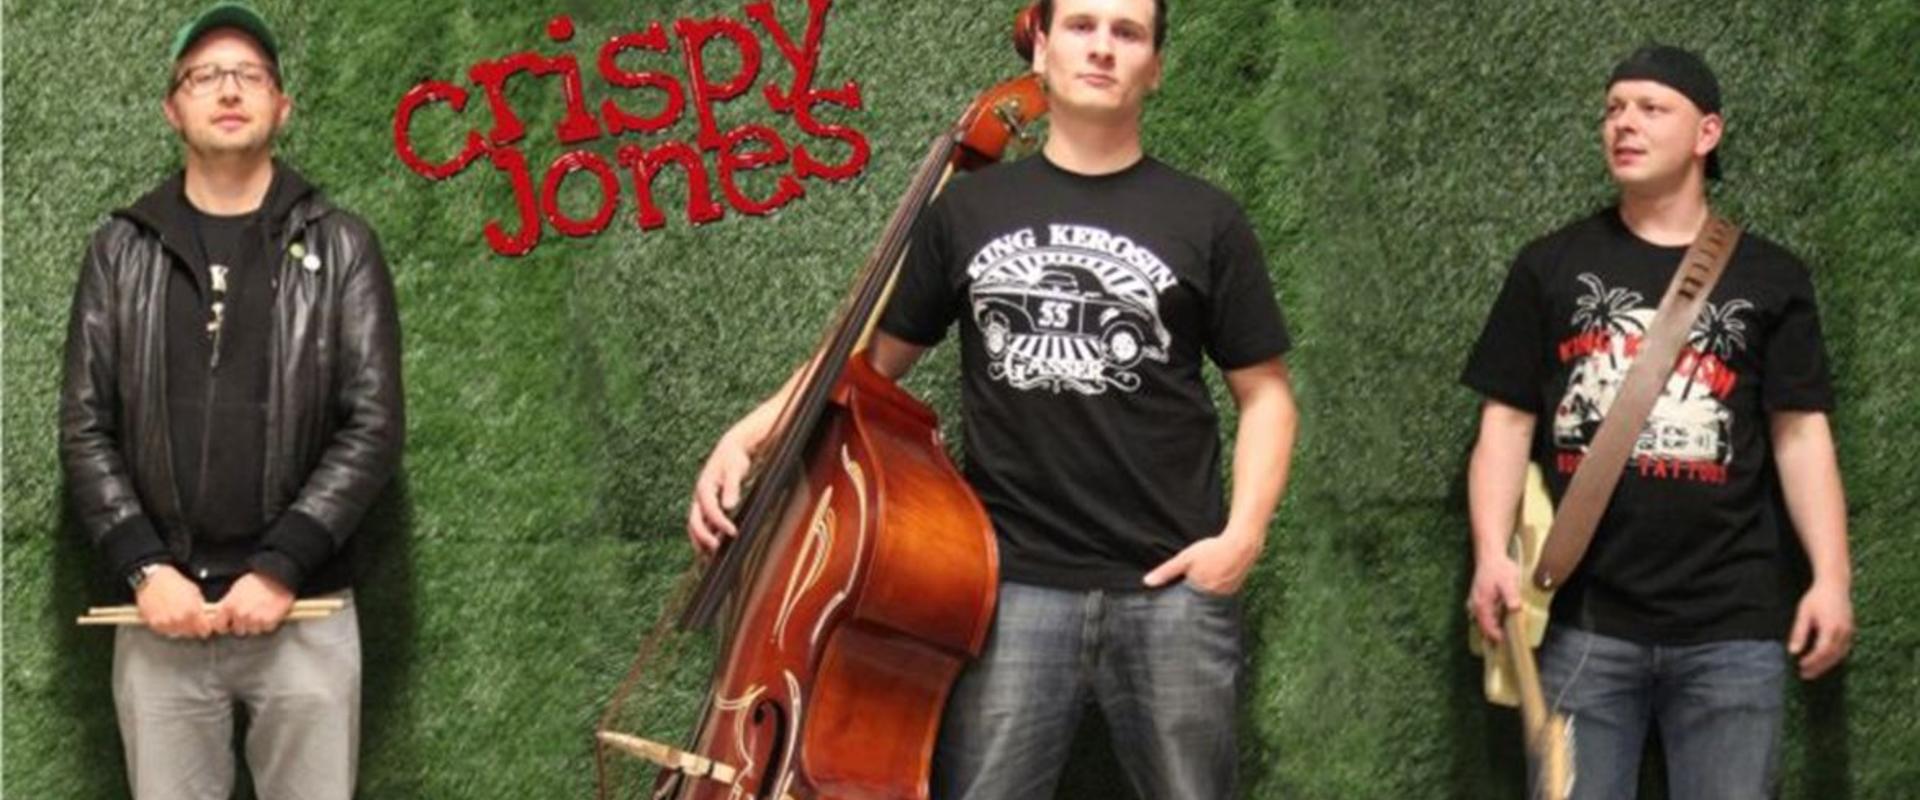 Band: Crispy Jones (Singersongwriter)